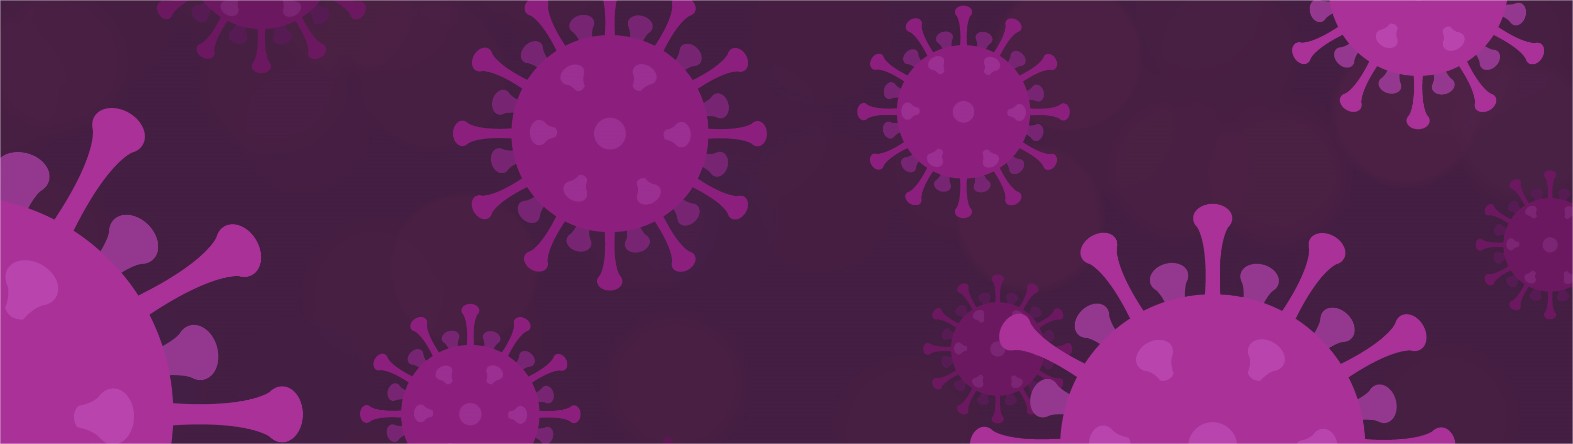 Coronavirus and Vexels